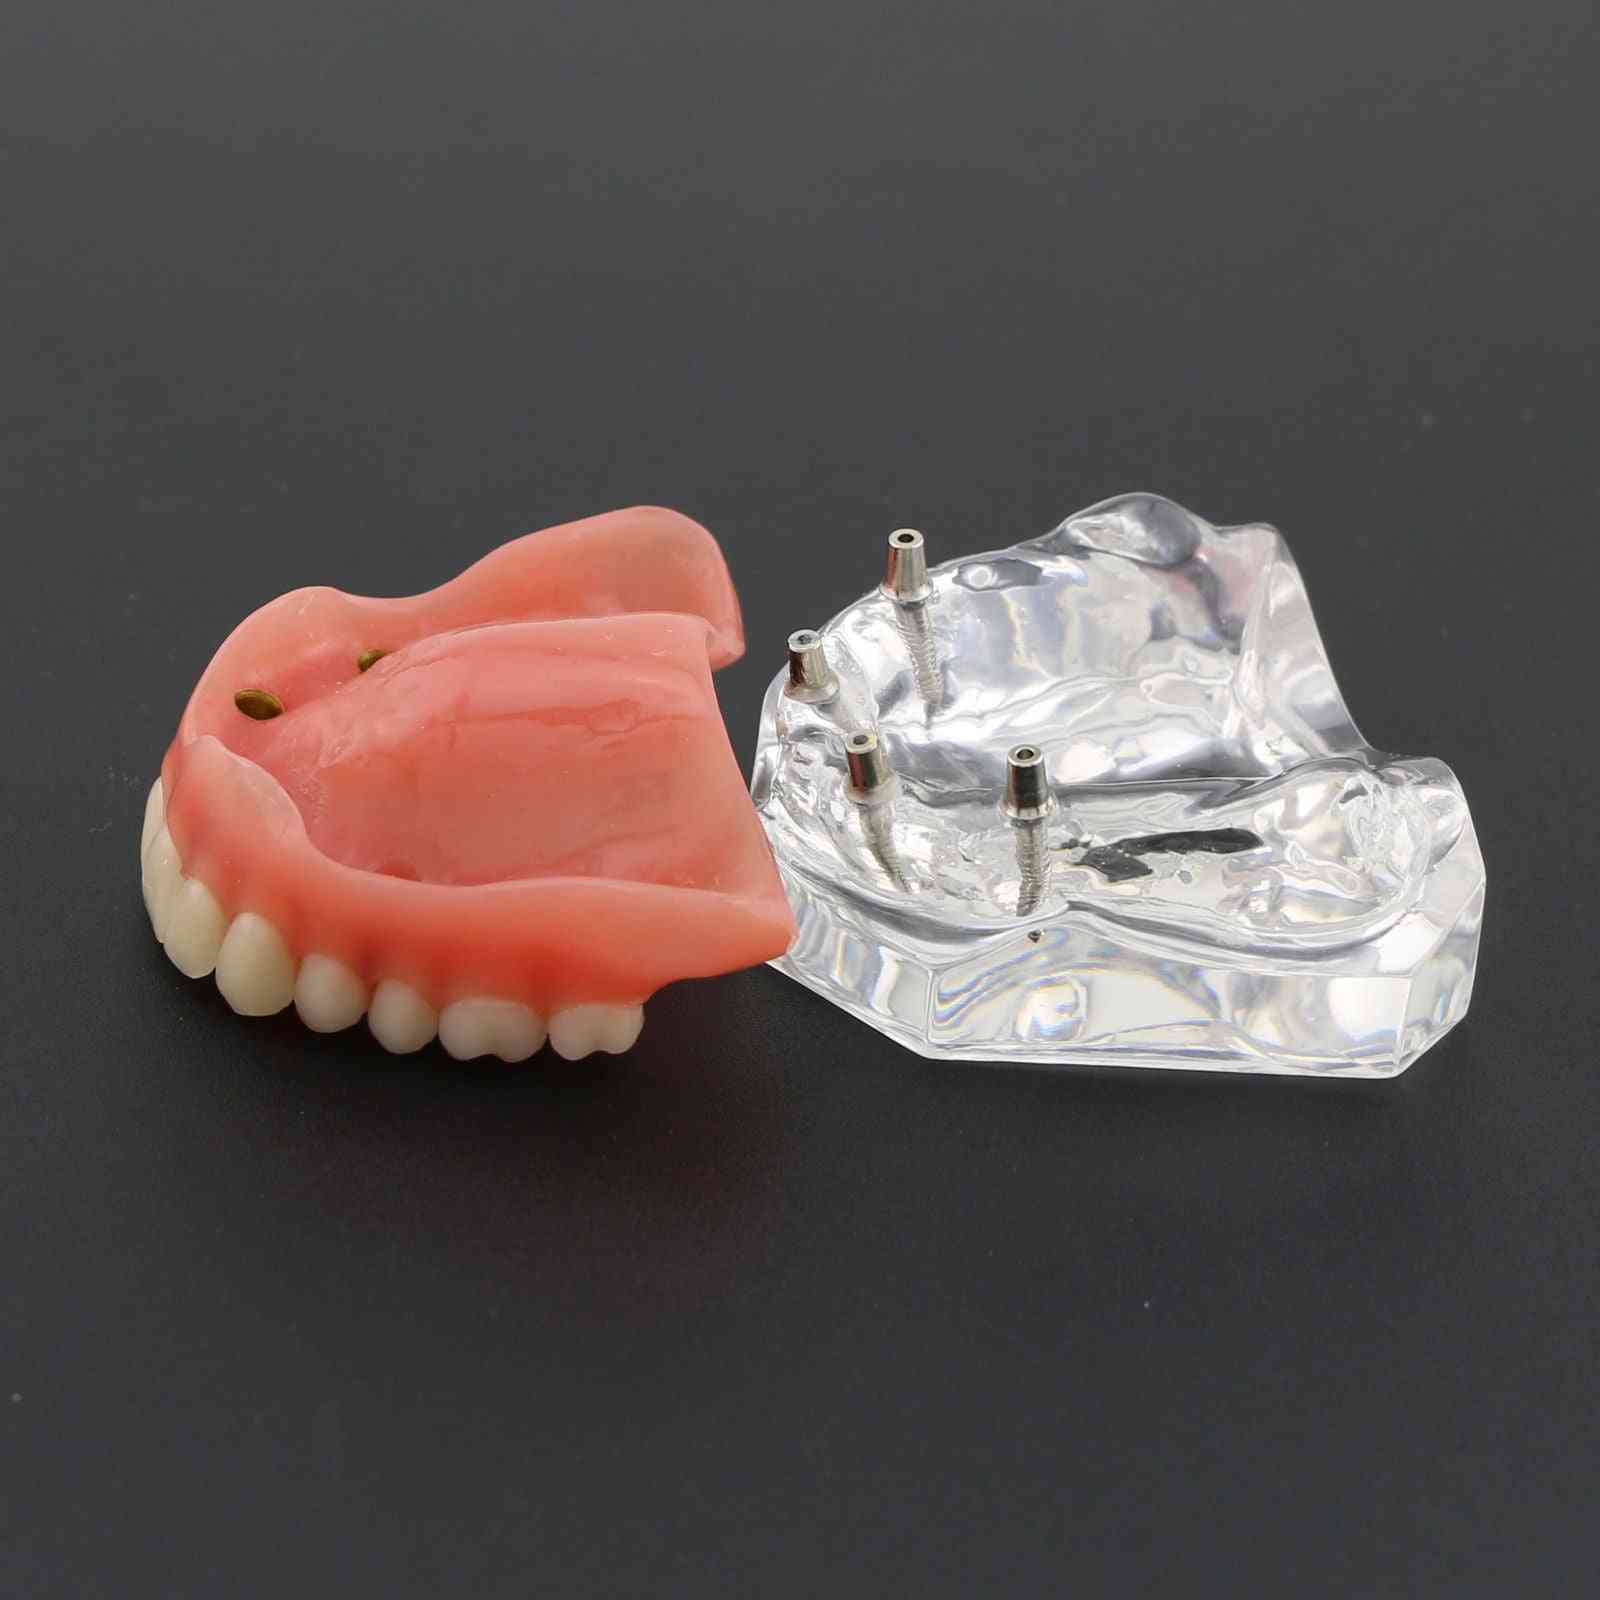 1ks horní zubní overdenture superior 4 implantáty demo model, model zubů